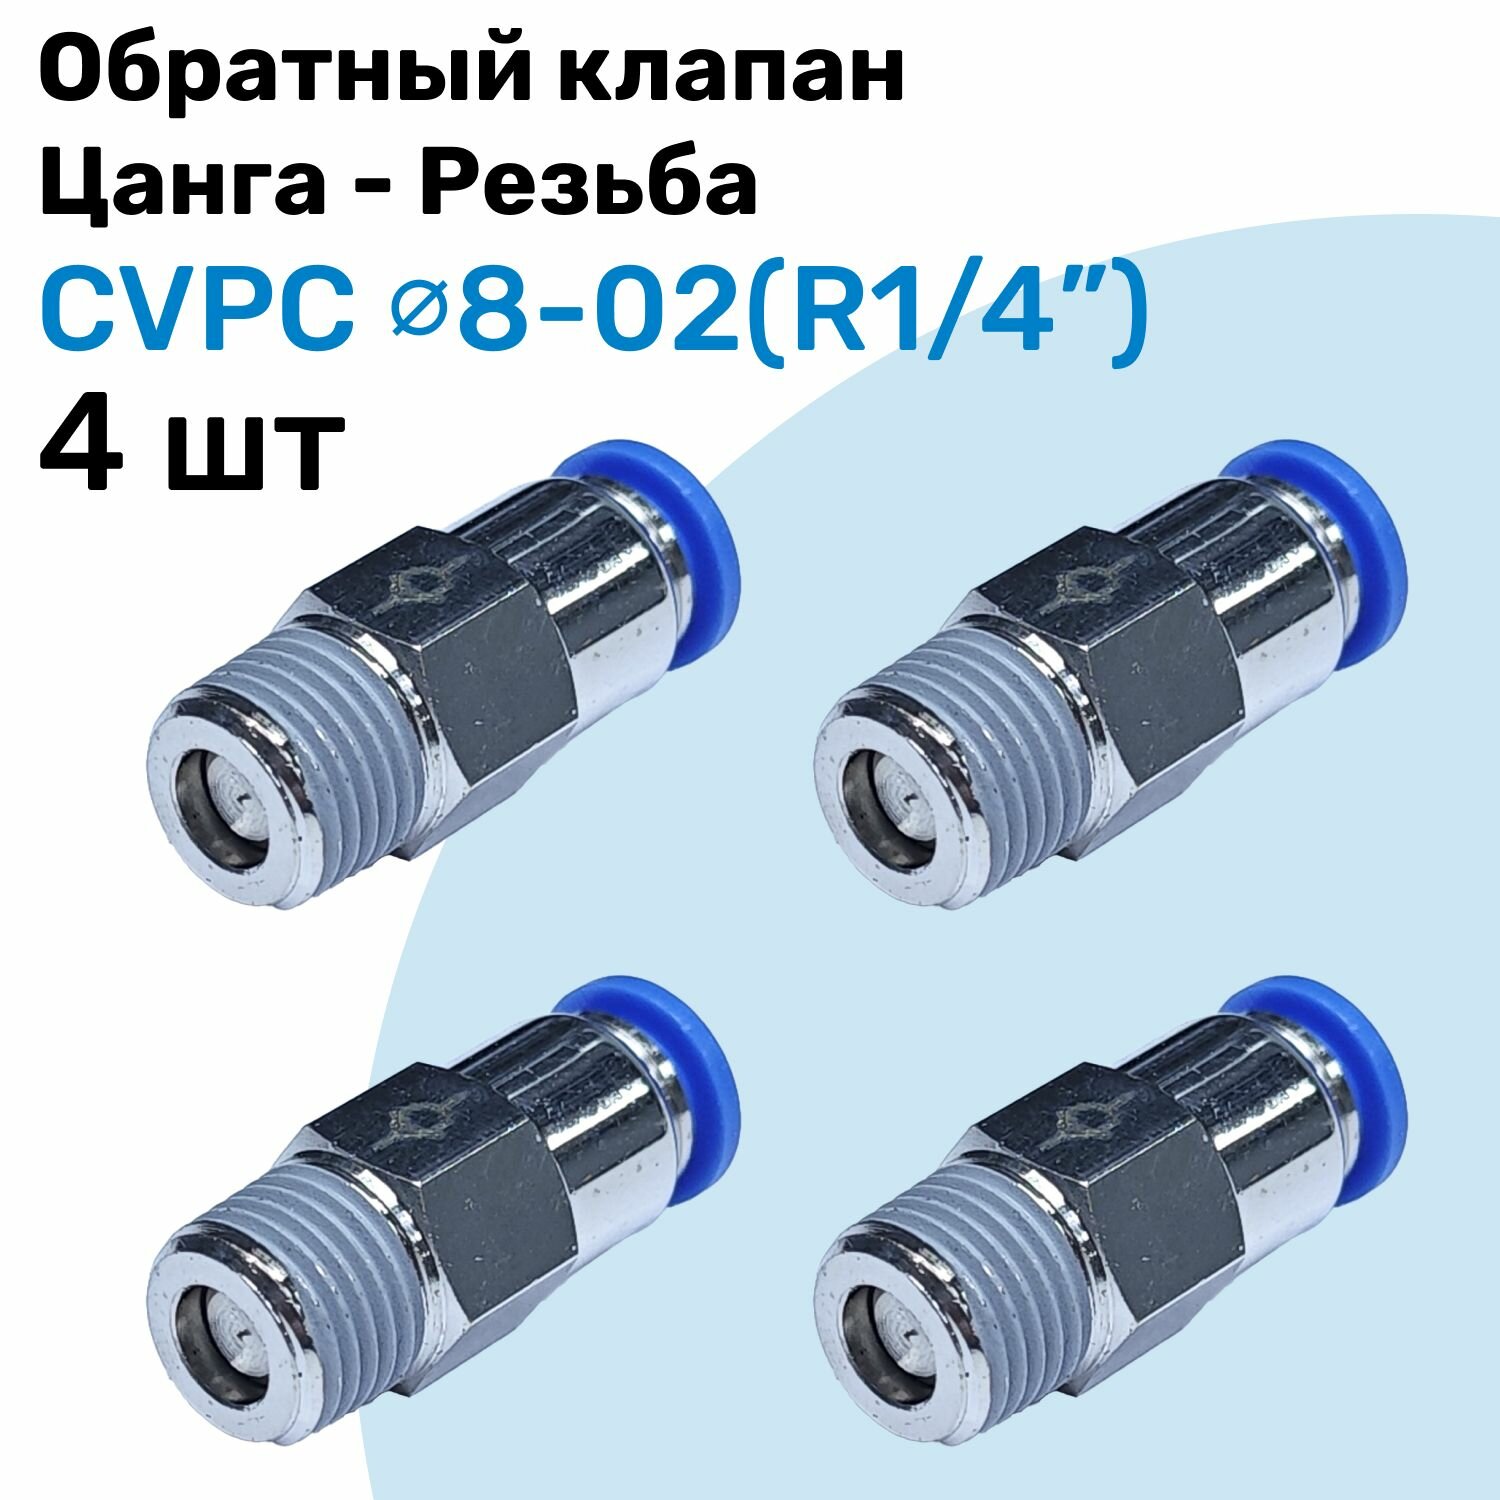 Обратный клапан латунный CVPC 8-02, 8мм - R1/4", Цанга - Внешняя резьба, Пневматический клапан NBPT, Набор 4шт